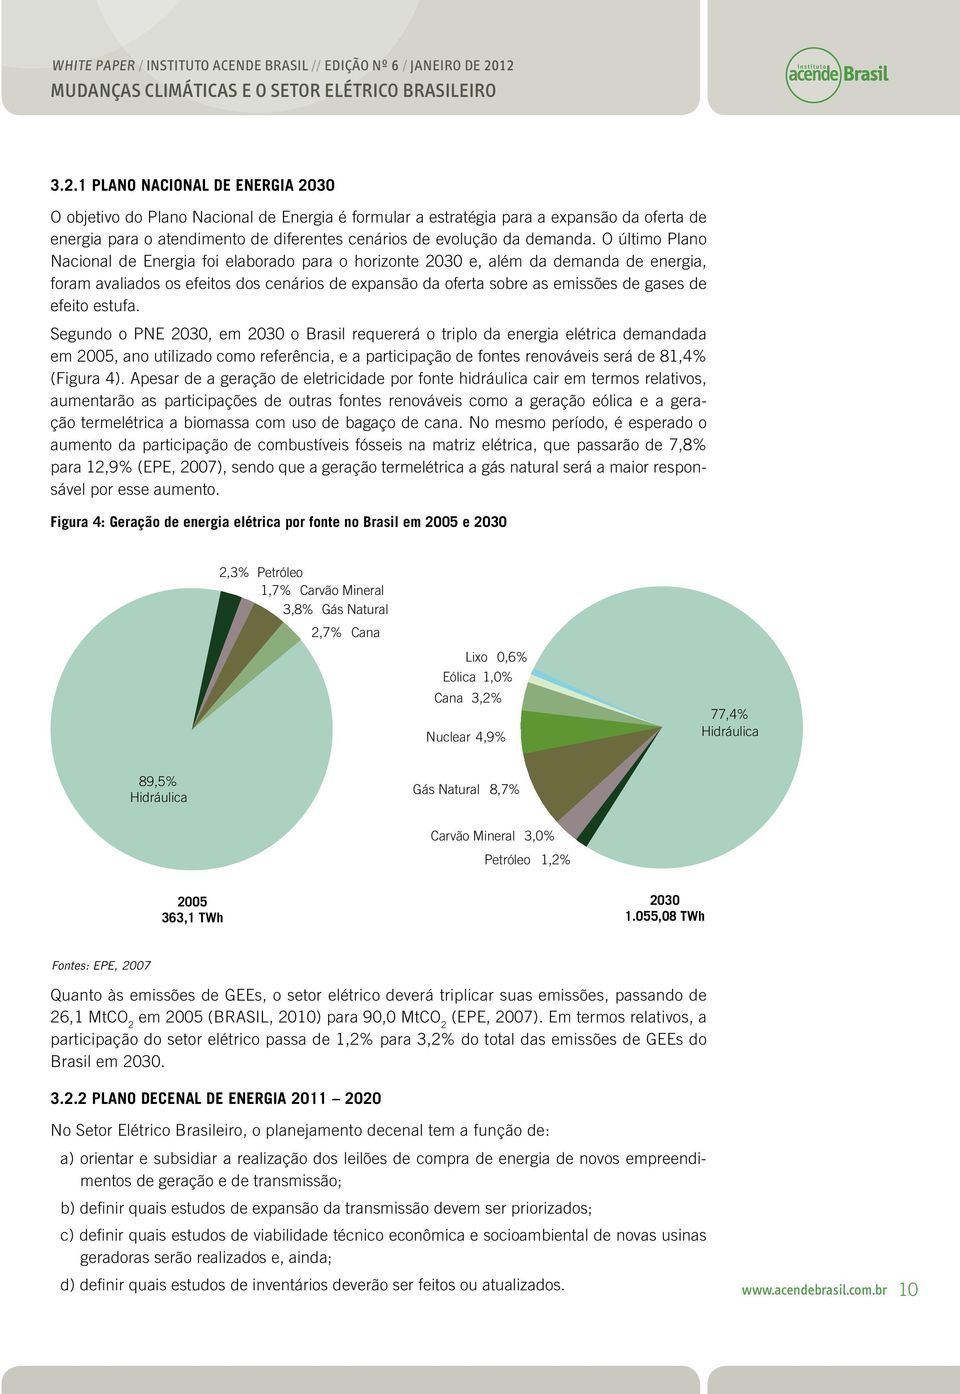 Sgundo o PNE 2030, m 2030 o Brasil rqurrá o triplo da nrgia létrica dmandada m 2005, ano utilizado como rfrência, a participação d fonts rnovávis srá d 81,4% (Figura 4).